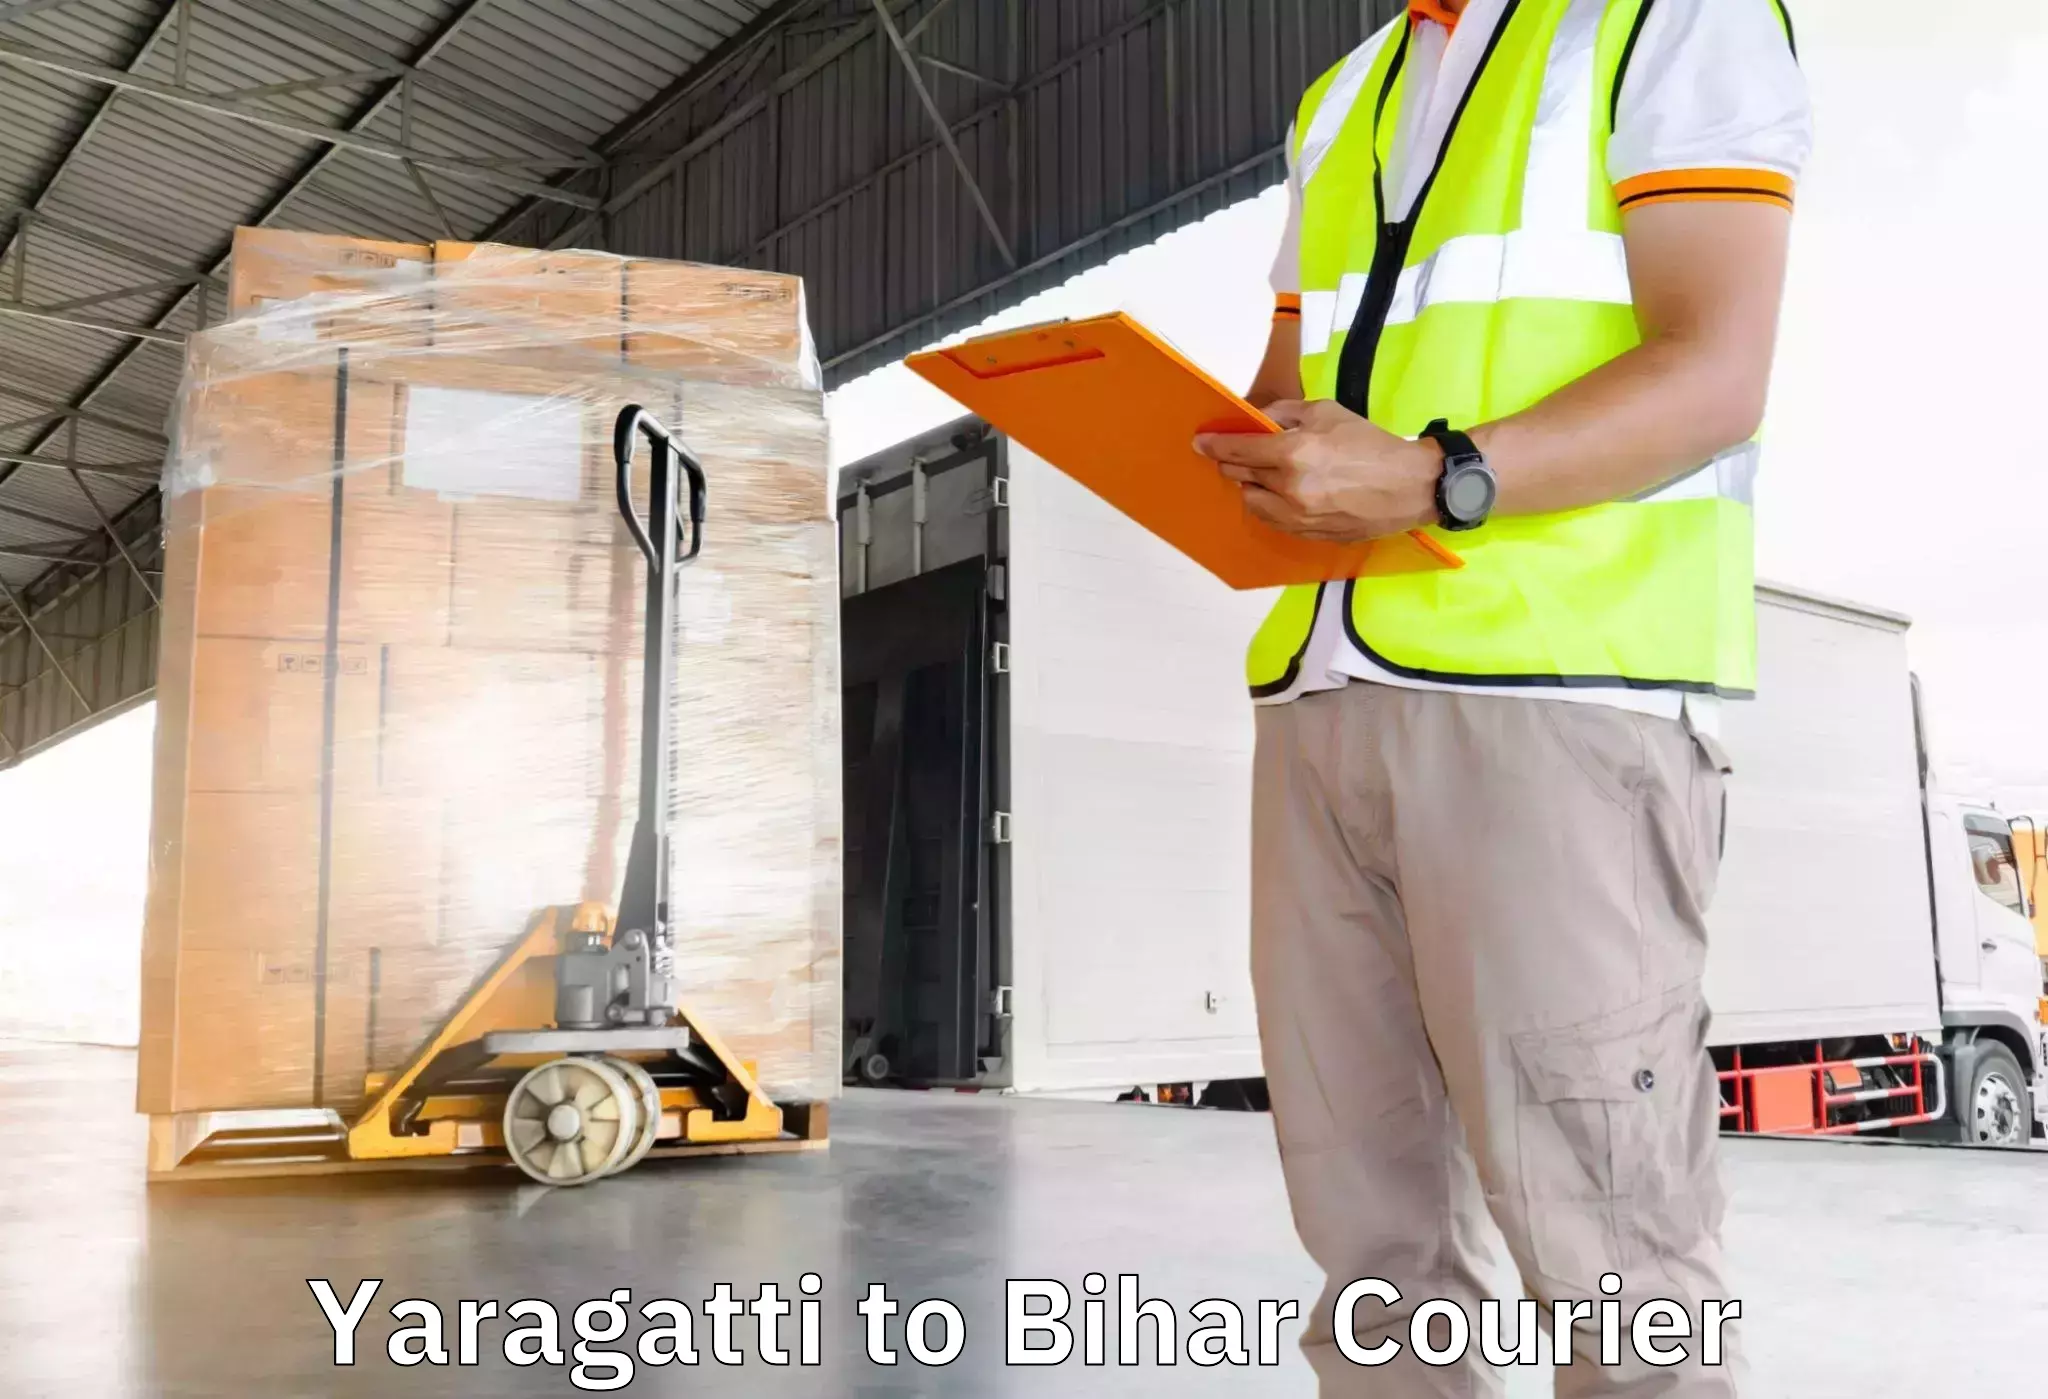 Furniture transport specialists Yaragatti to Bihar